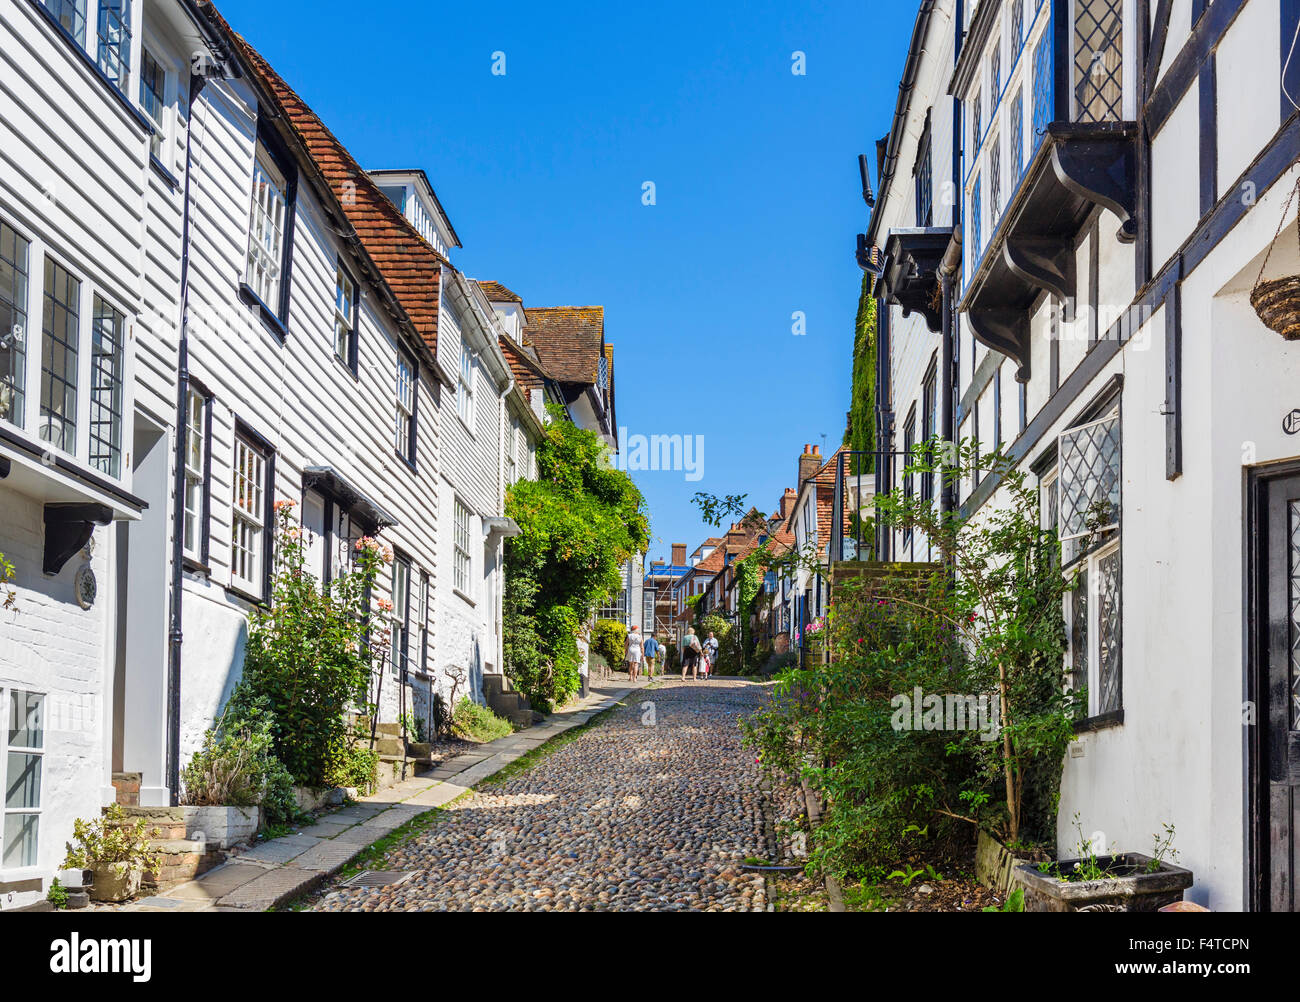 Historic Mermaid Street nella città vecchia, segale, East Sussex, England, Regno Unito Foto Stock